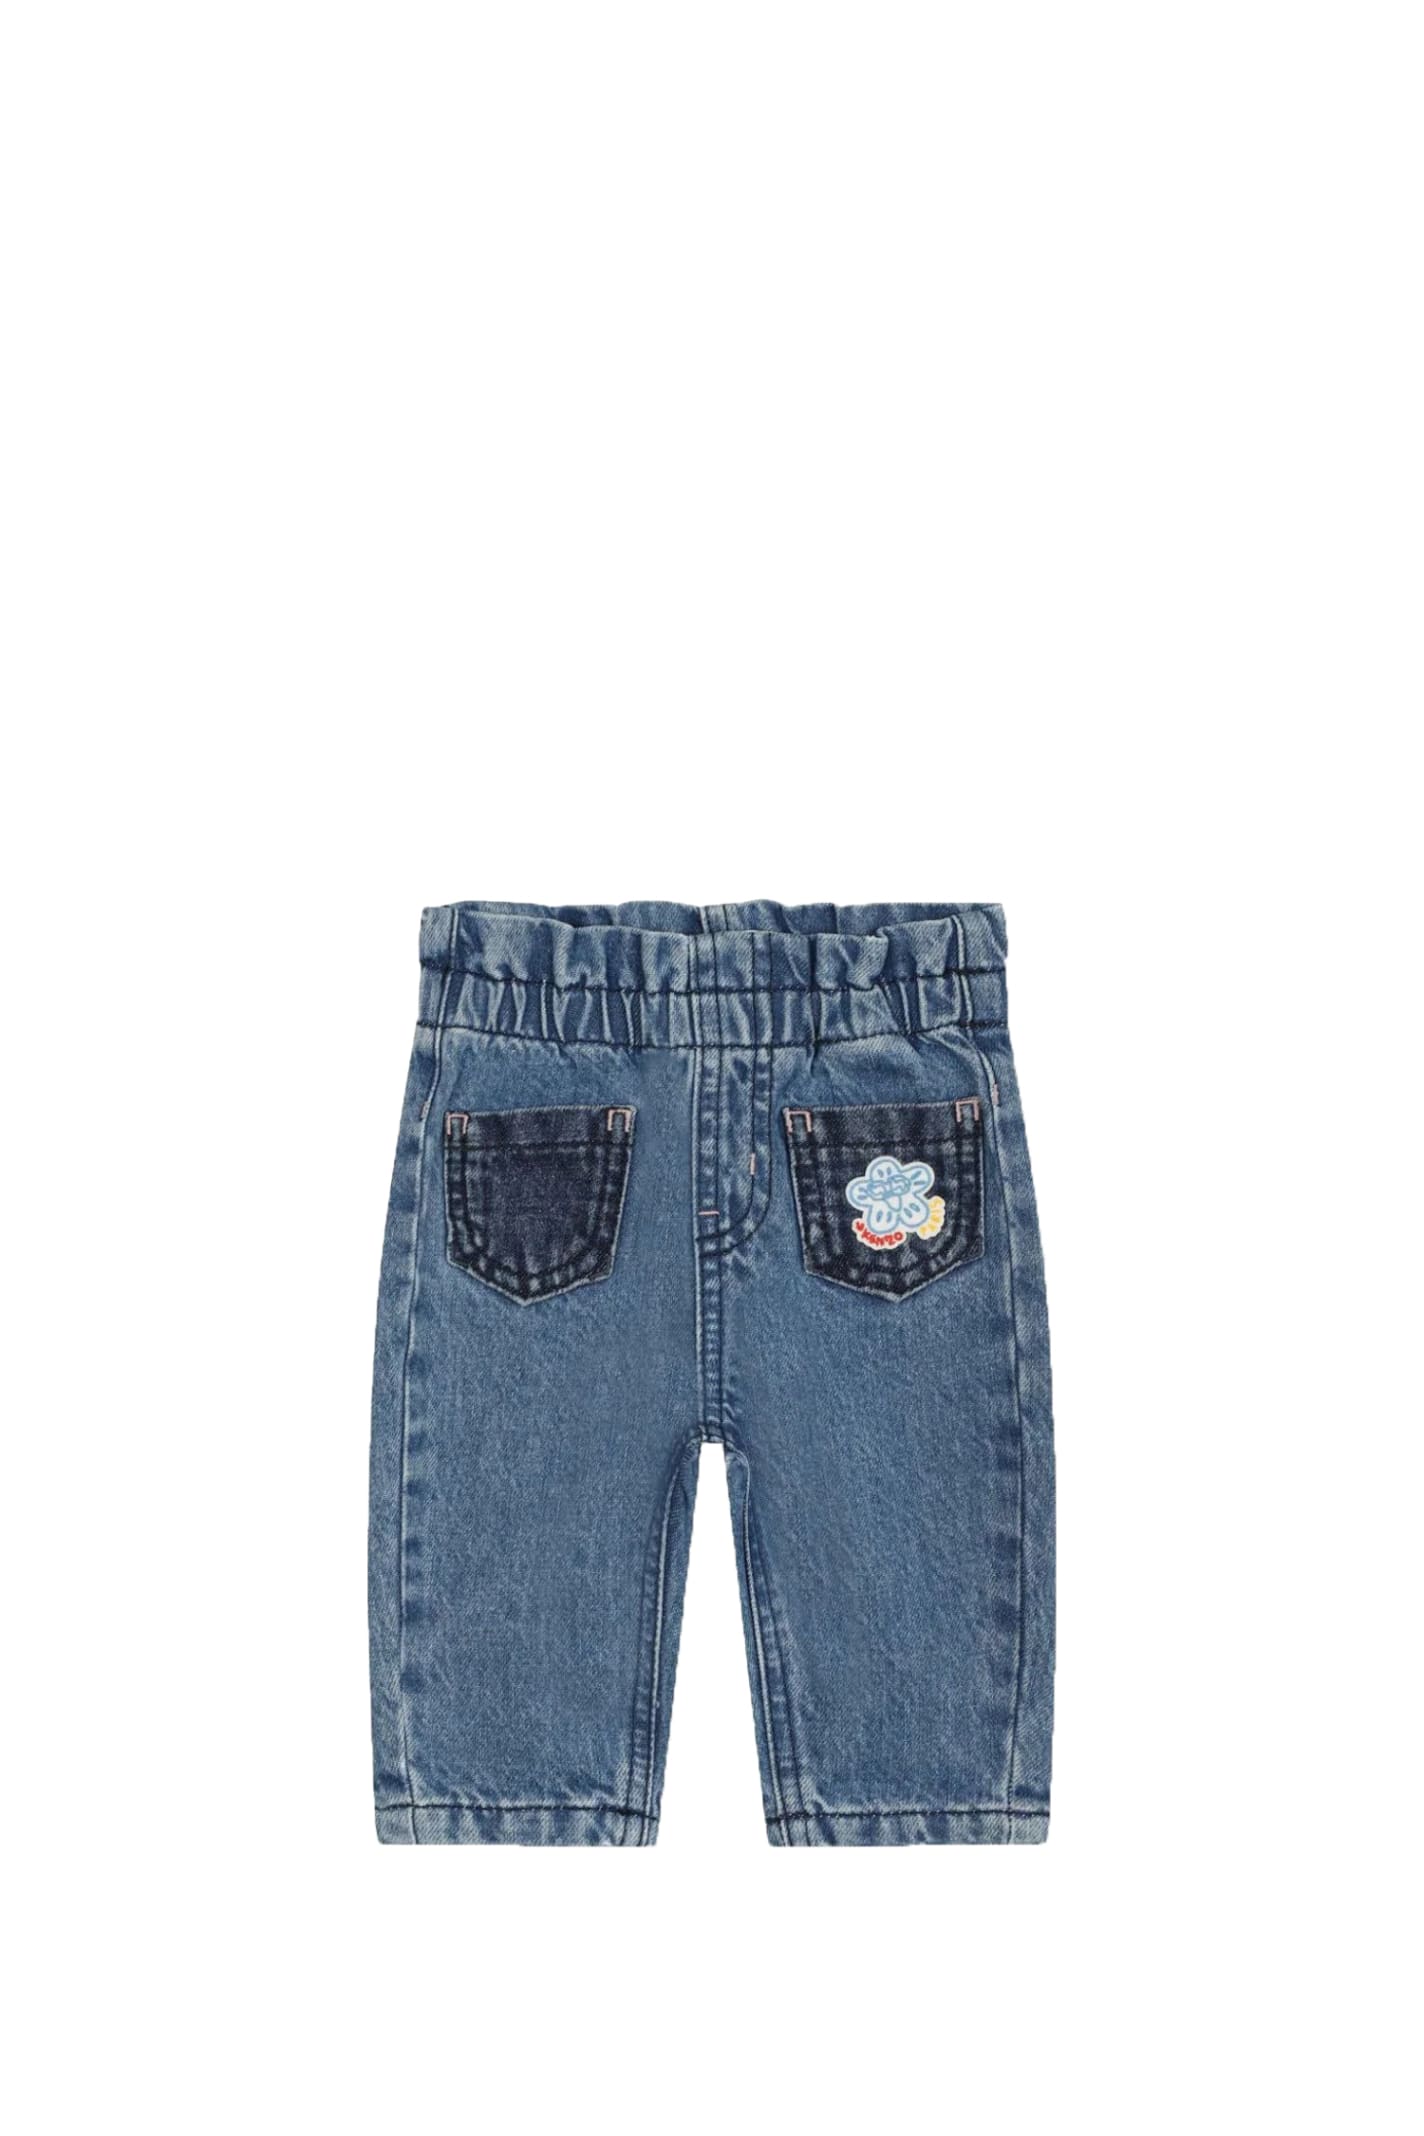 Kenzo Kids' Cotton Denim Jeans In Blue